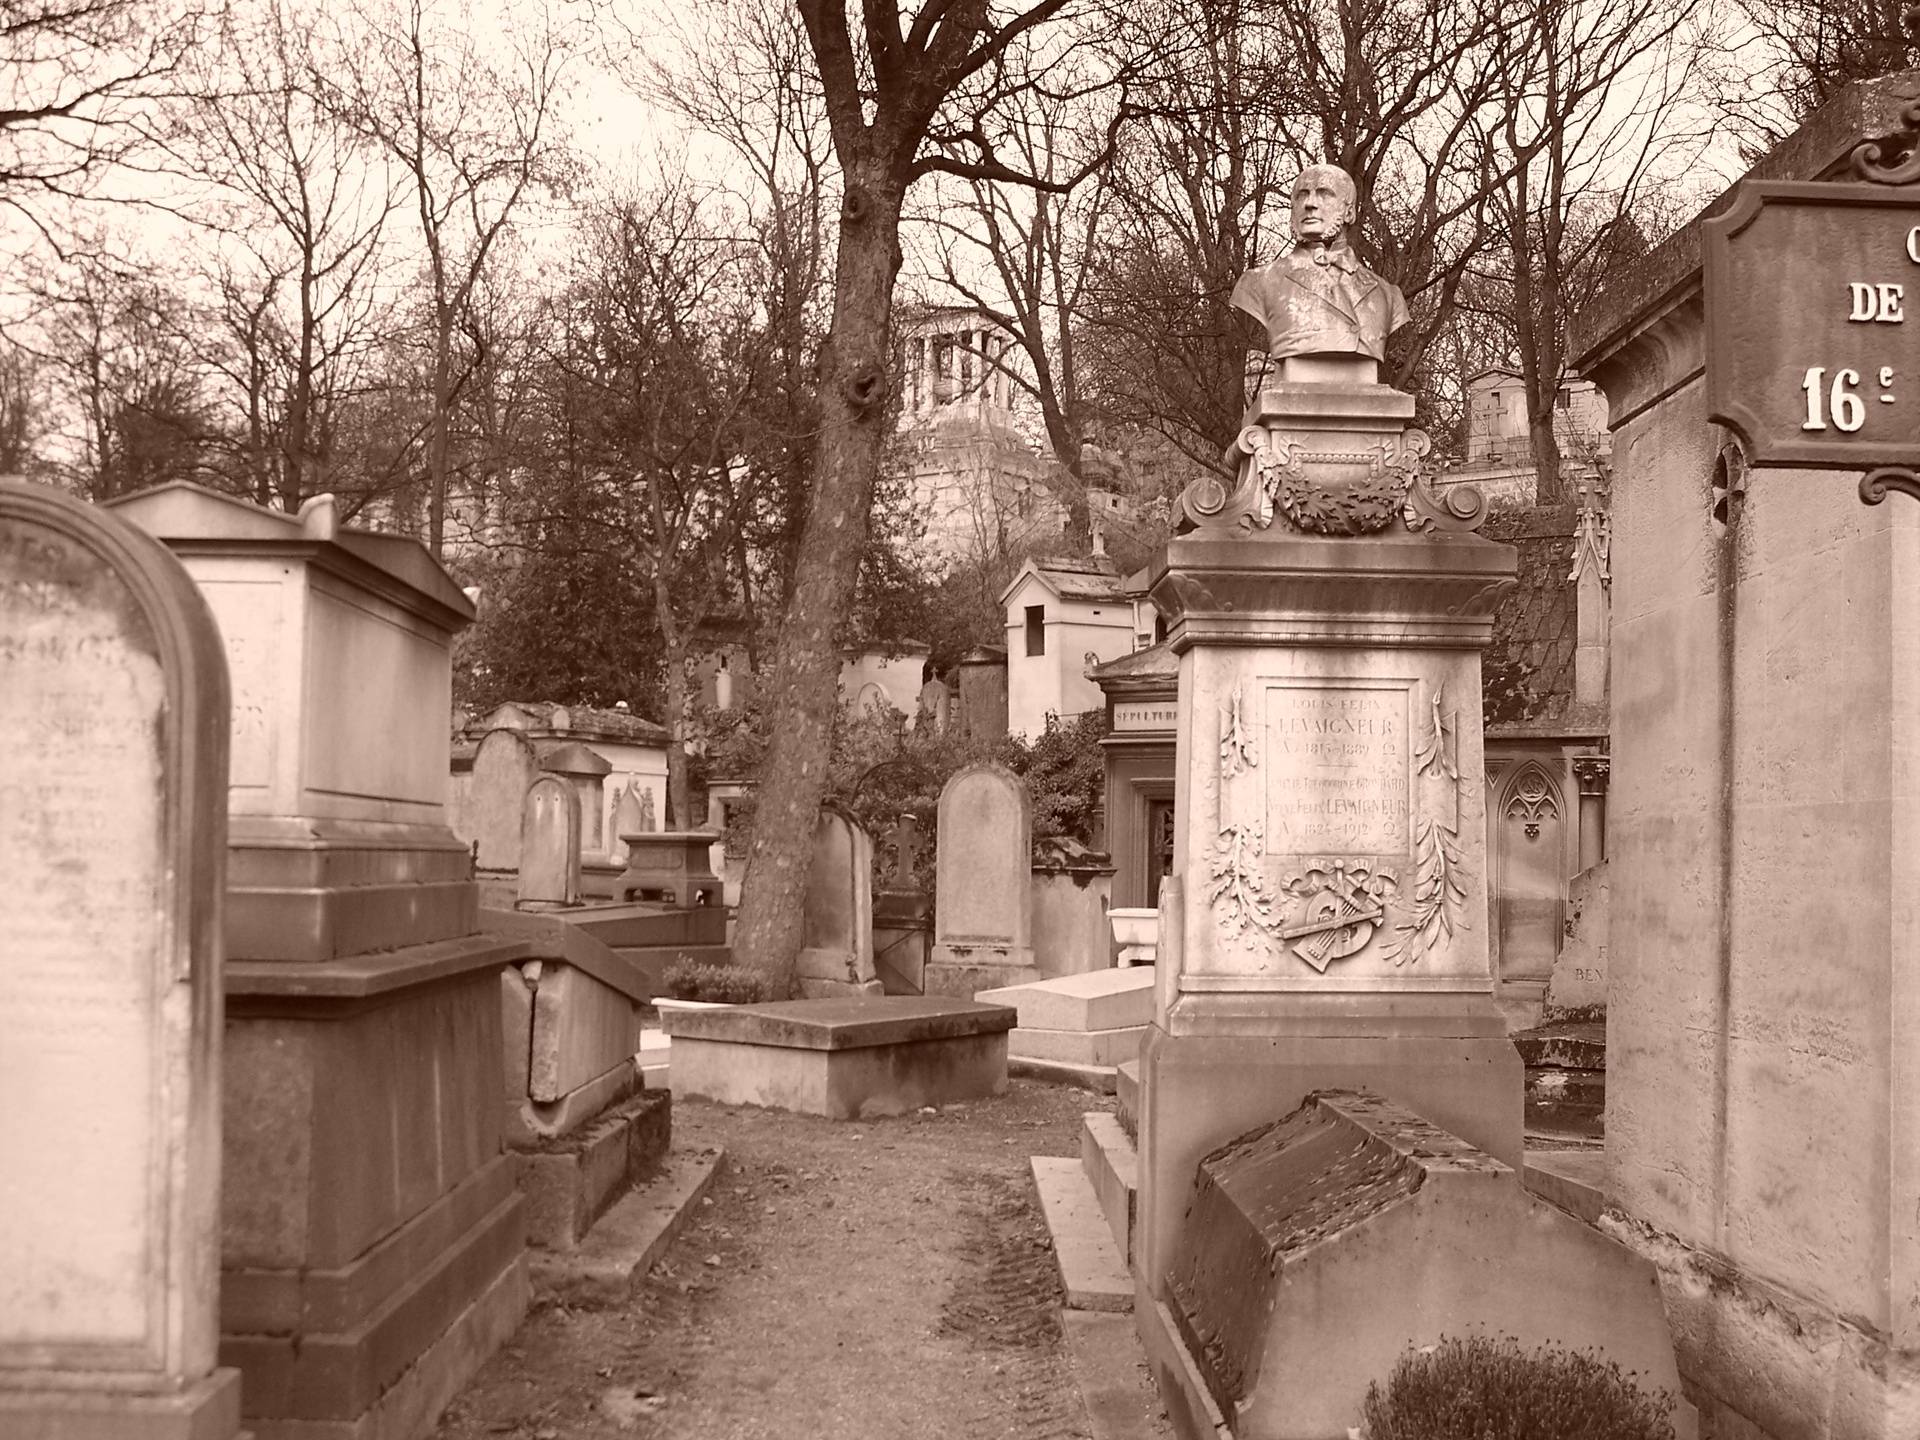 Père Lachaise cemetery in Paris